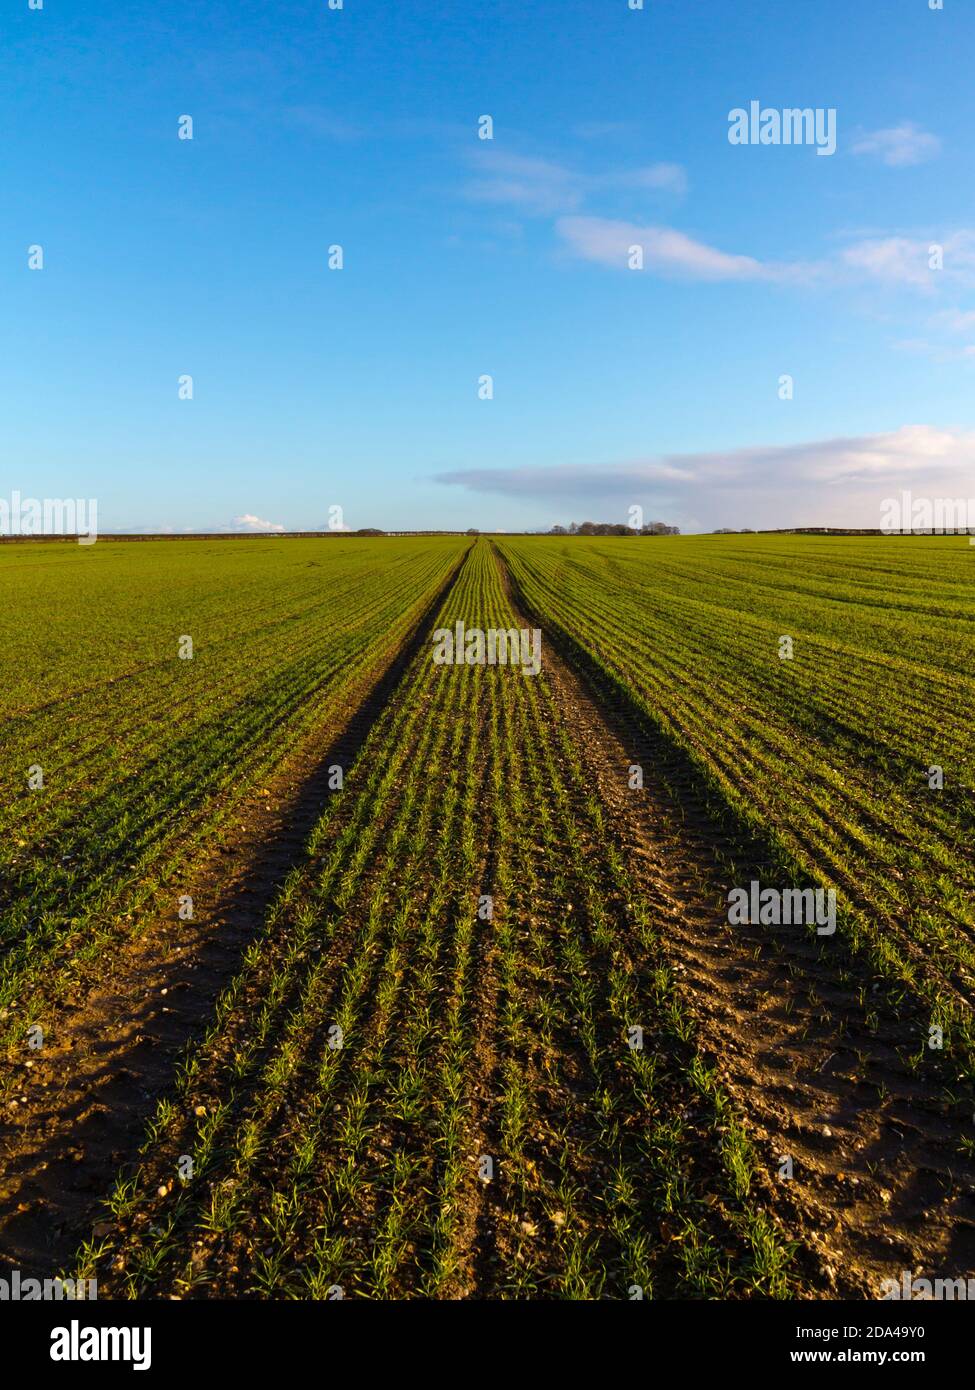 Paesaggio pianeggiante in una fattoria con campo di seminativi utilizzati per coltivare colture e giovani germogli che iniziano ad emergere dal suolo. Foto Stock